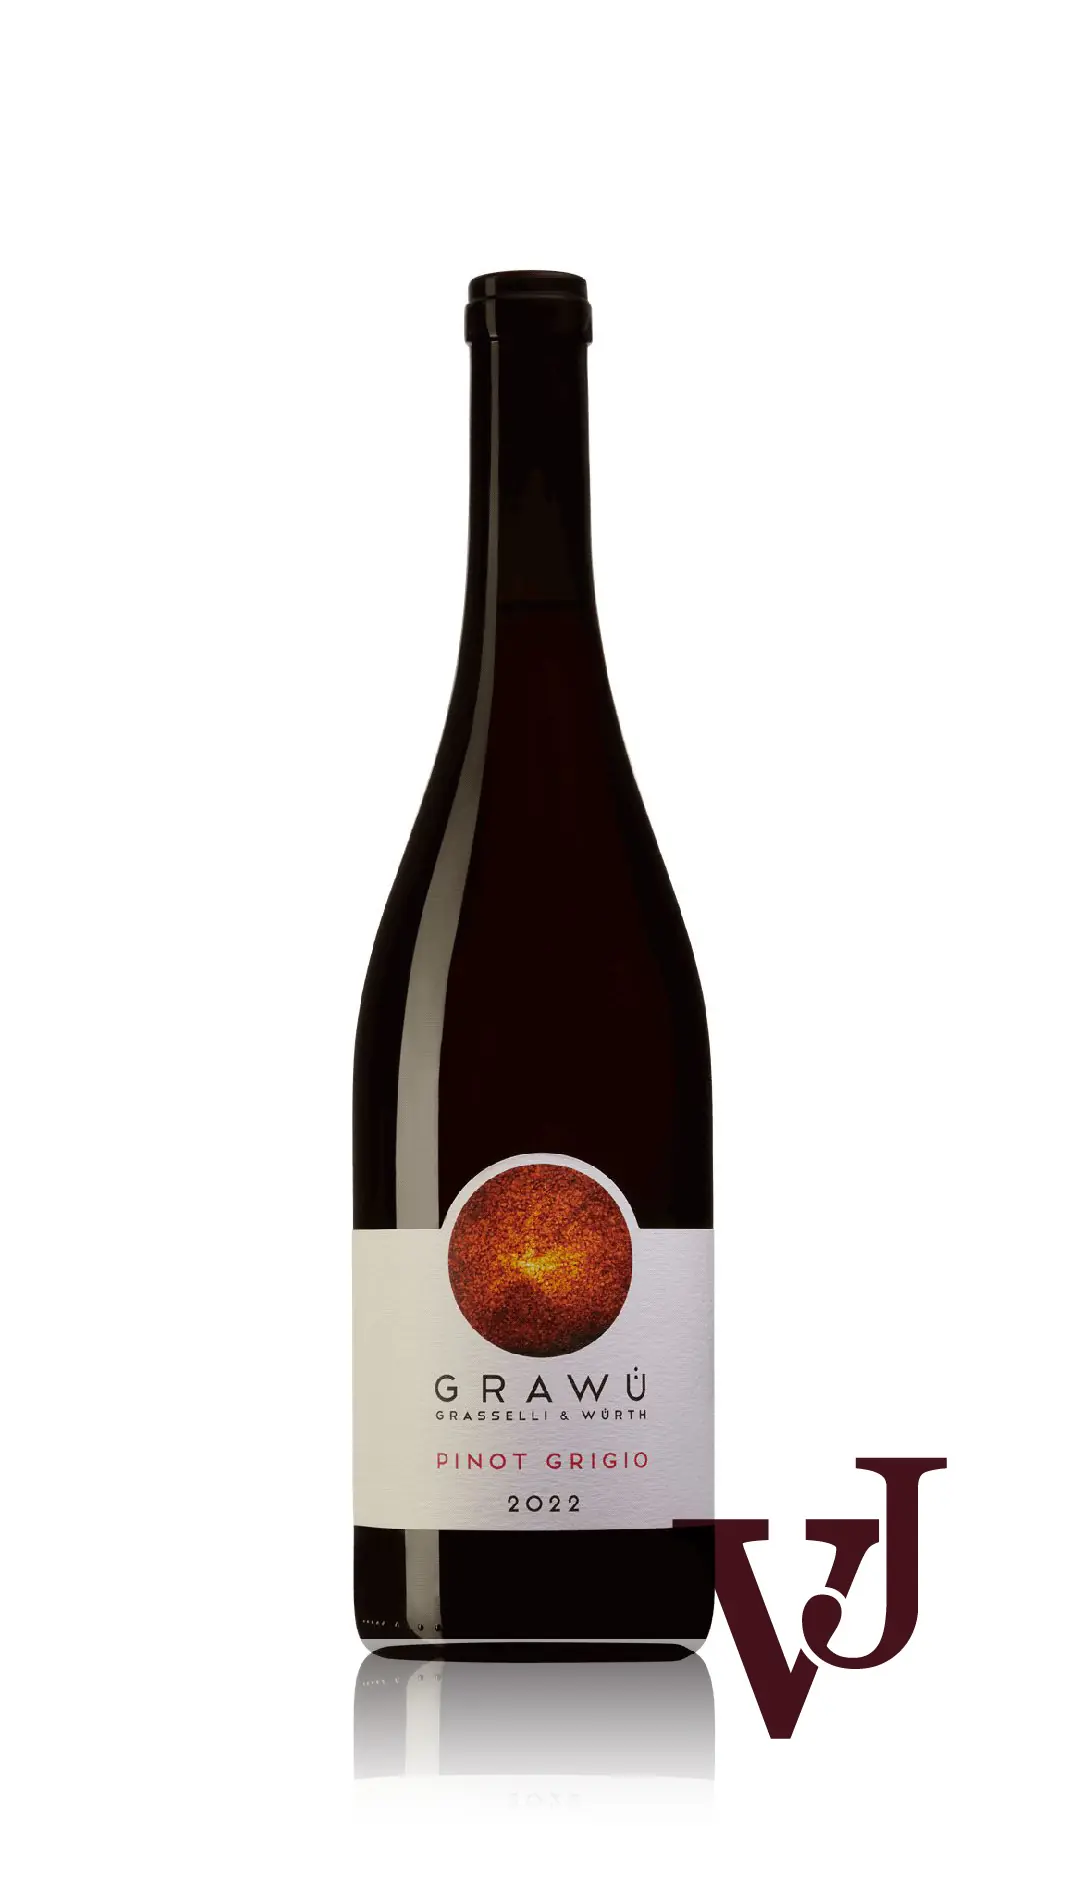 Vitt Vin - Grawü Grasselli & Würth Pinot Grigio 2022 artikel nummer 9218801 från producenten Grawü Grasselli & Würth från området Italien - Vinjournalen.se